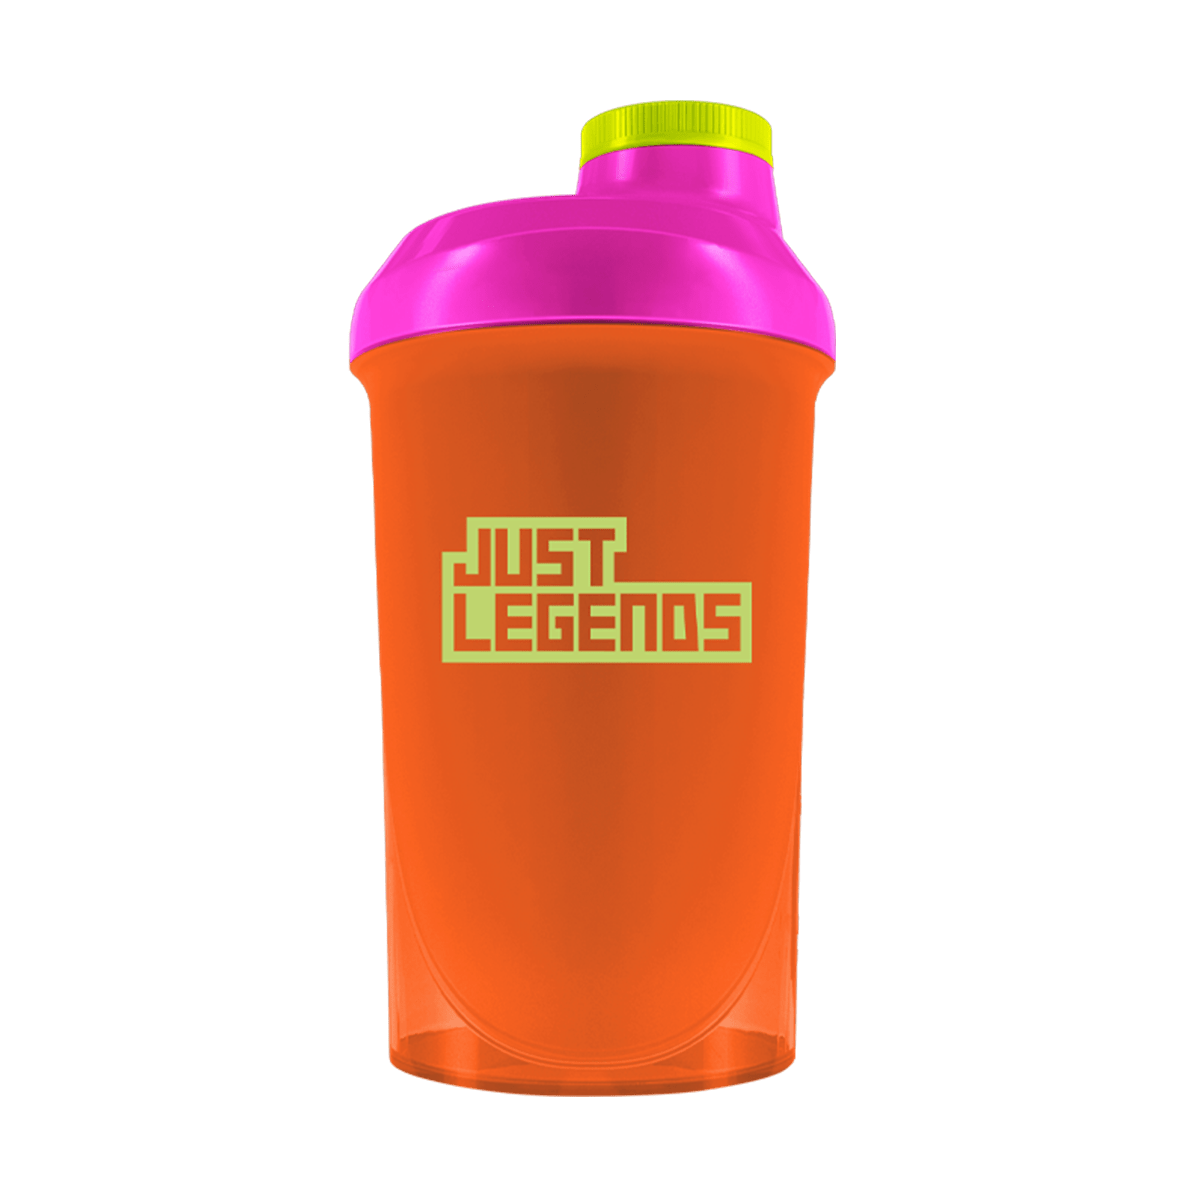 Just Legends Premium Shaker "Focus On" | Funktionaler, veganer Reward auf Pulverbasis ohne Zucker, mit wenig Kalorien, vielen Vitaminen und natürlichen Aromen.